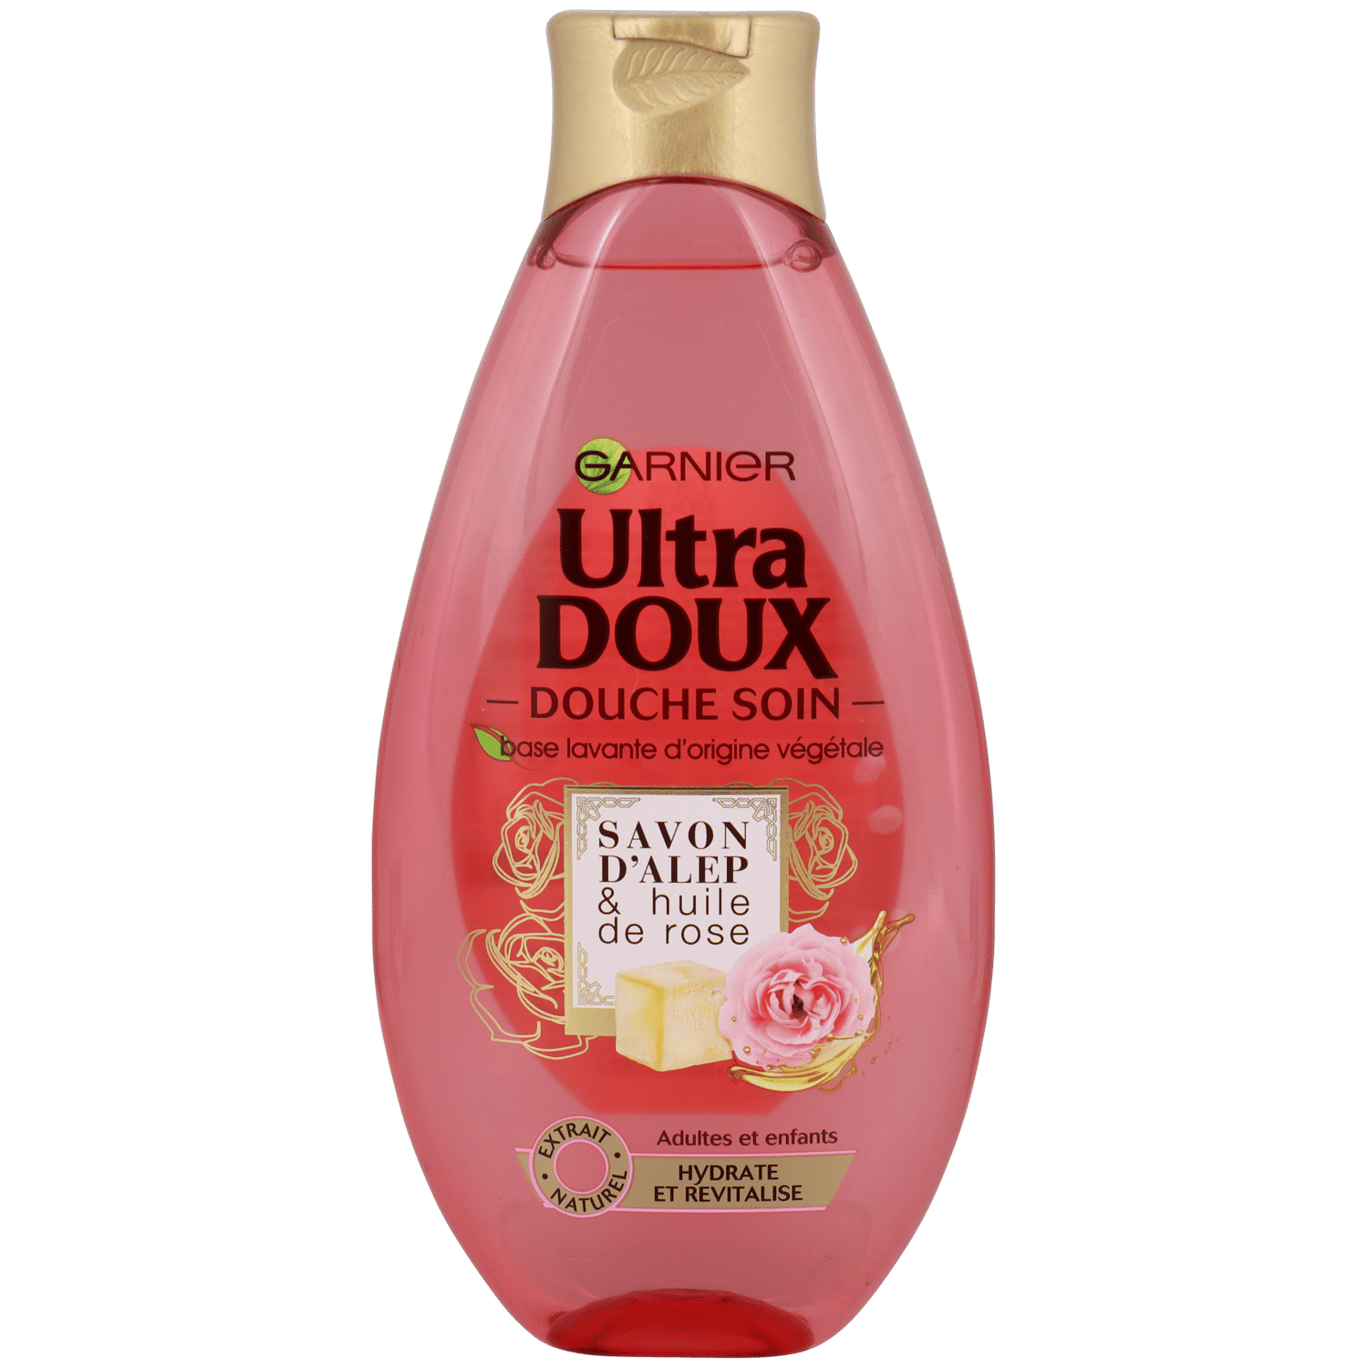 Ultra Doux gel douche Garnier Rose